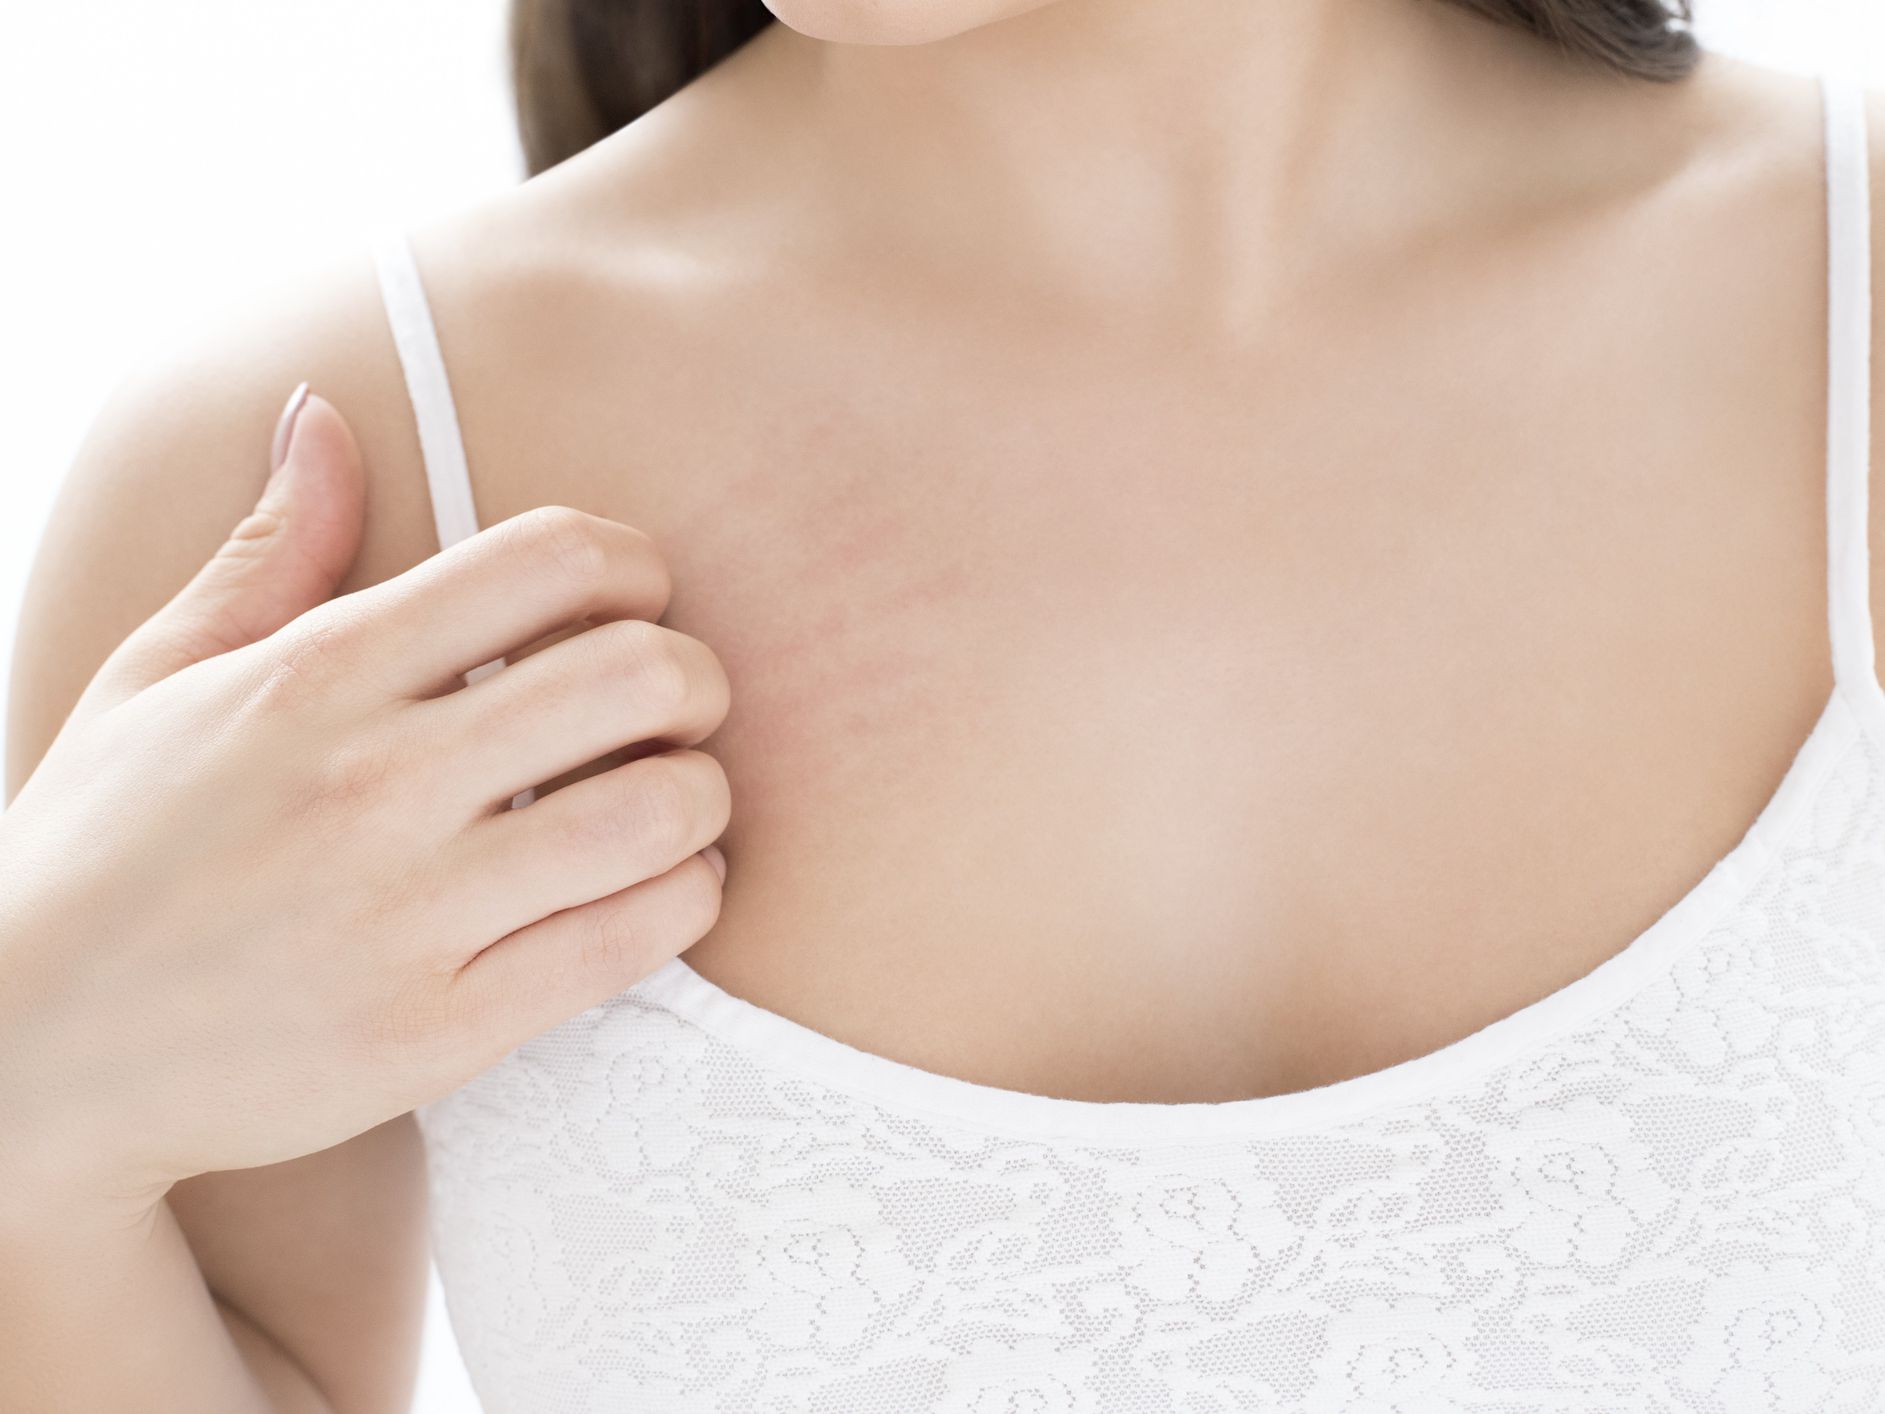 Er røde flekker på brystet et tegn på kreft? – Jeg tror på vitenskap